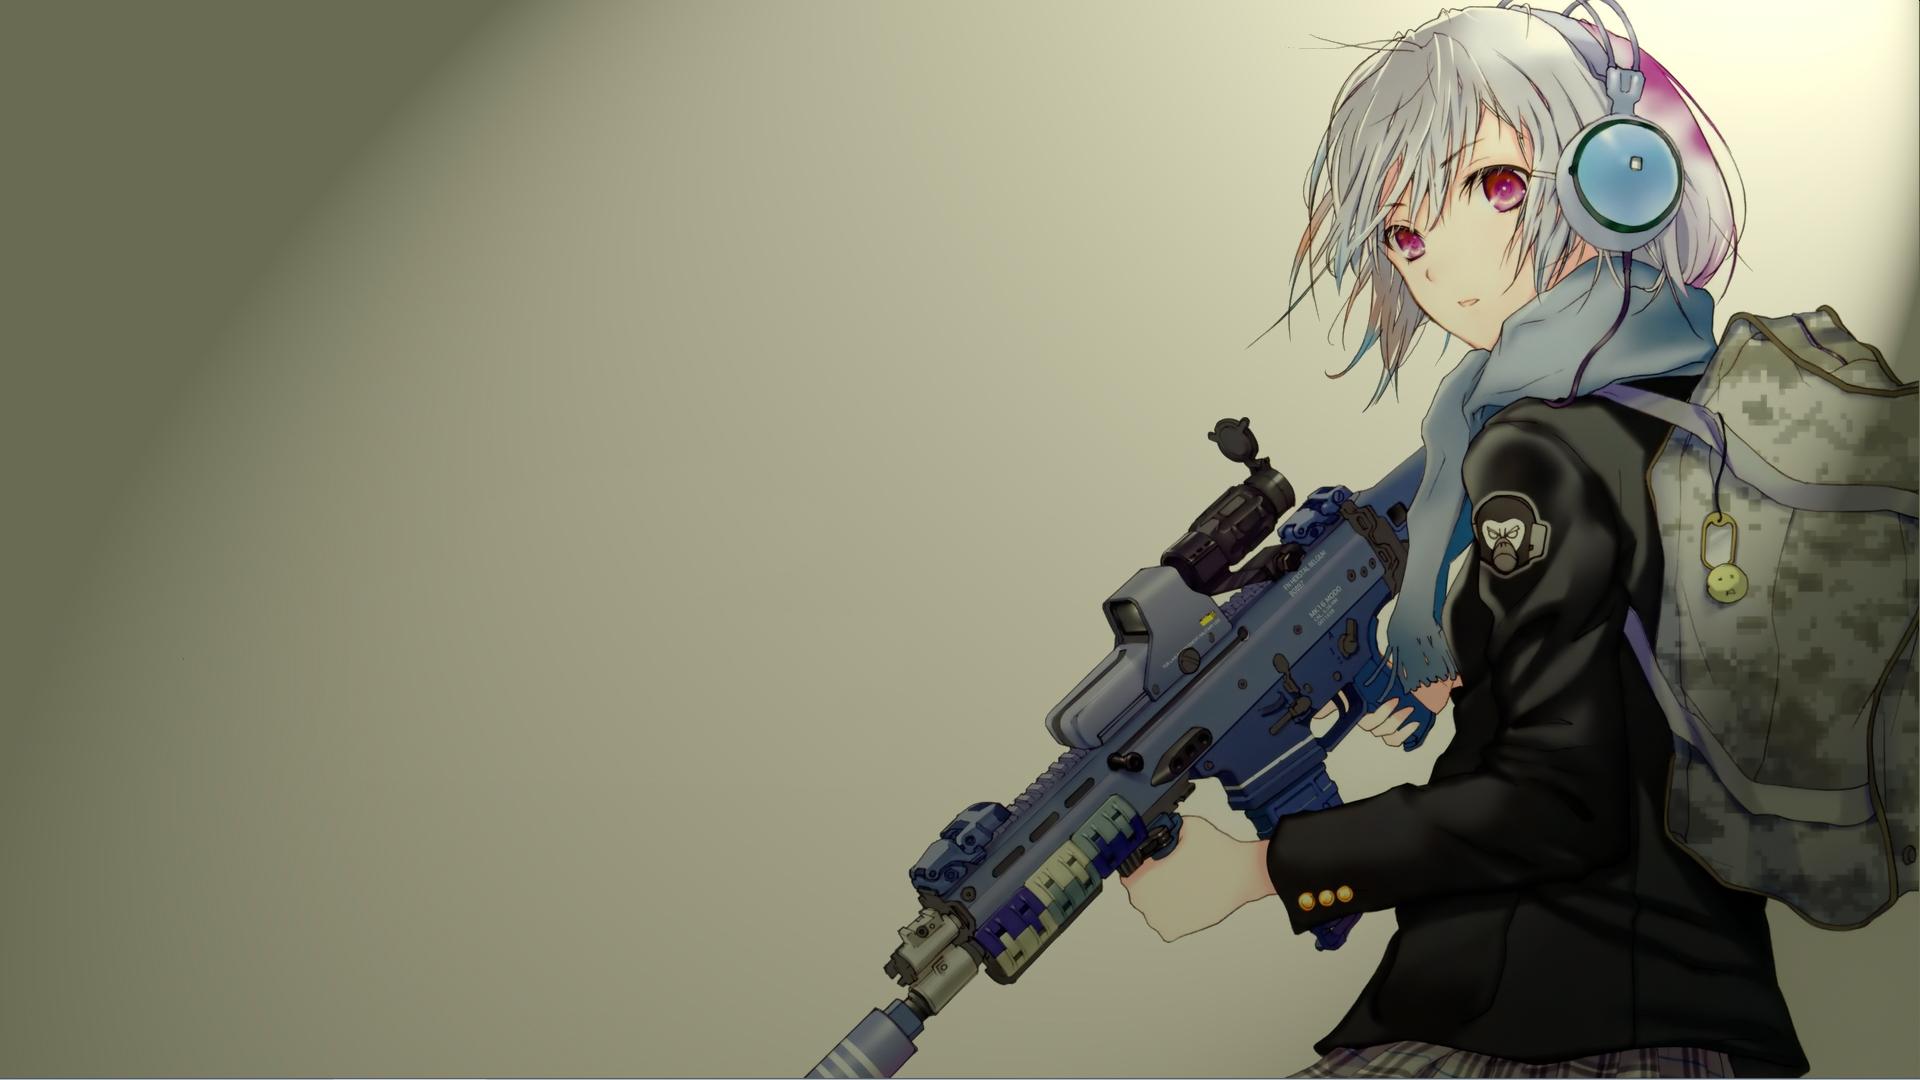 gun, headphones, military, anime, rifle, short hair, weapon, white hair